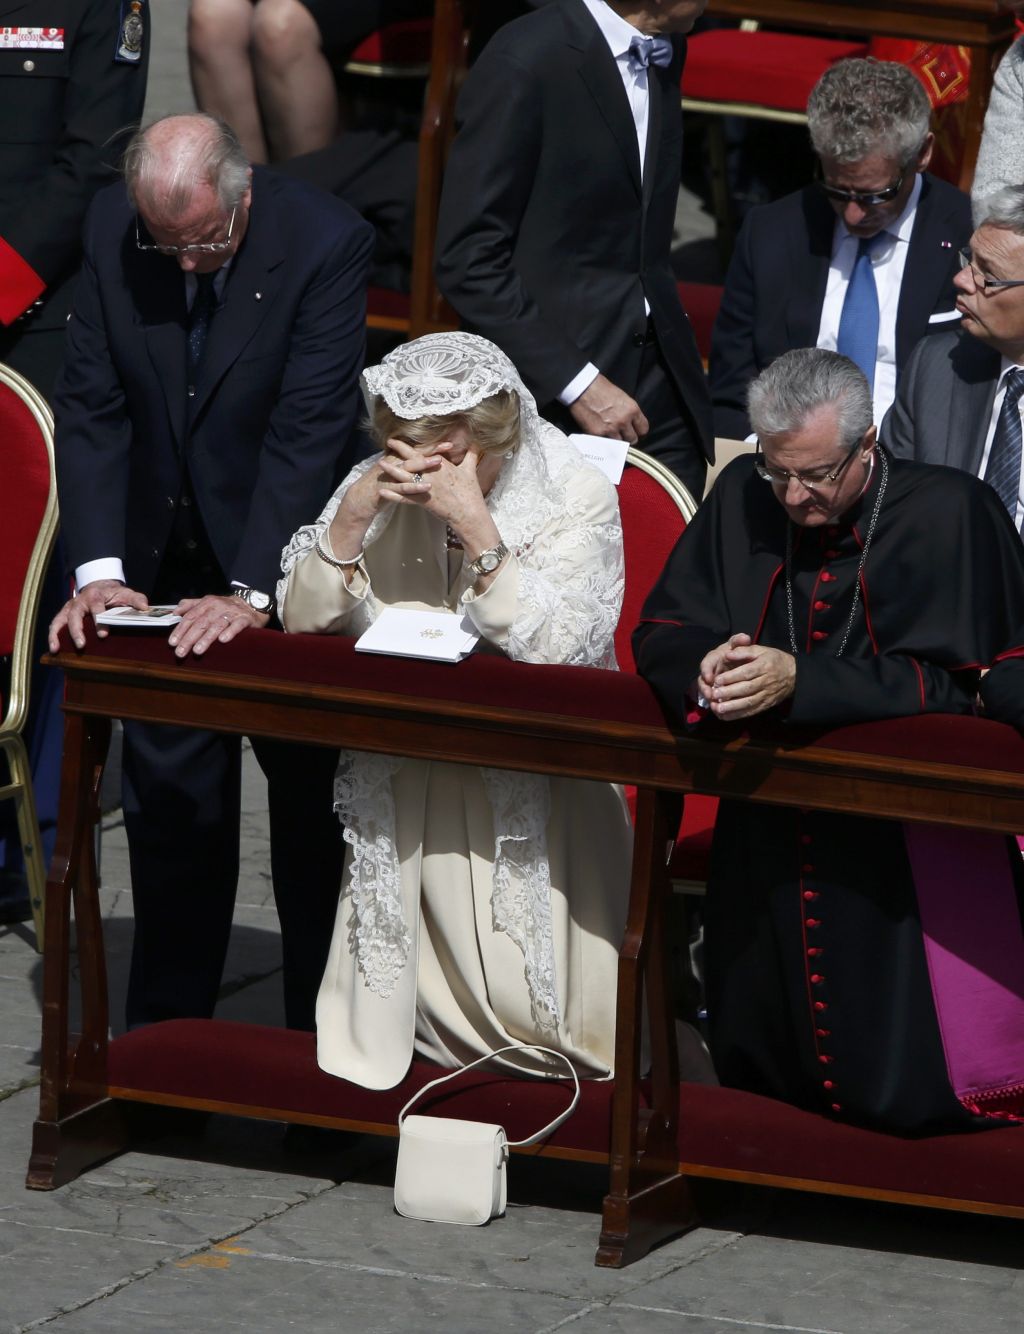 FOTO: Pahor z Rodetom, papež združil kraljeve glave in nezaželene diktatorje